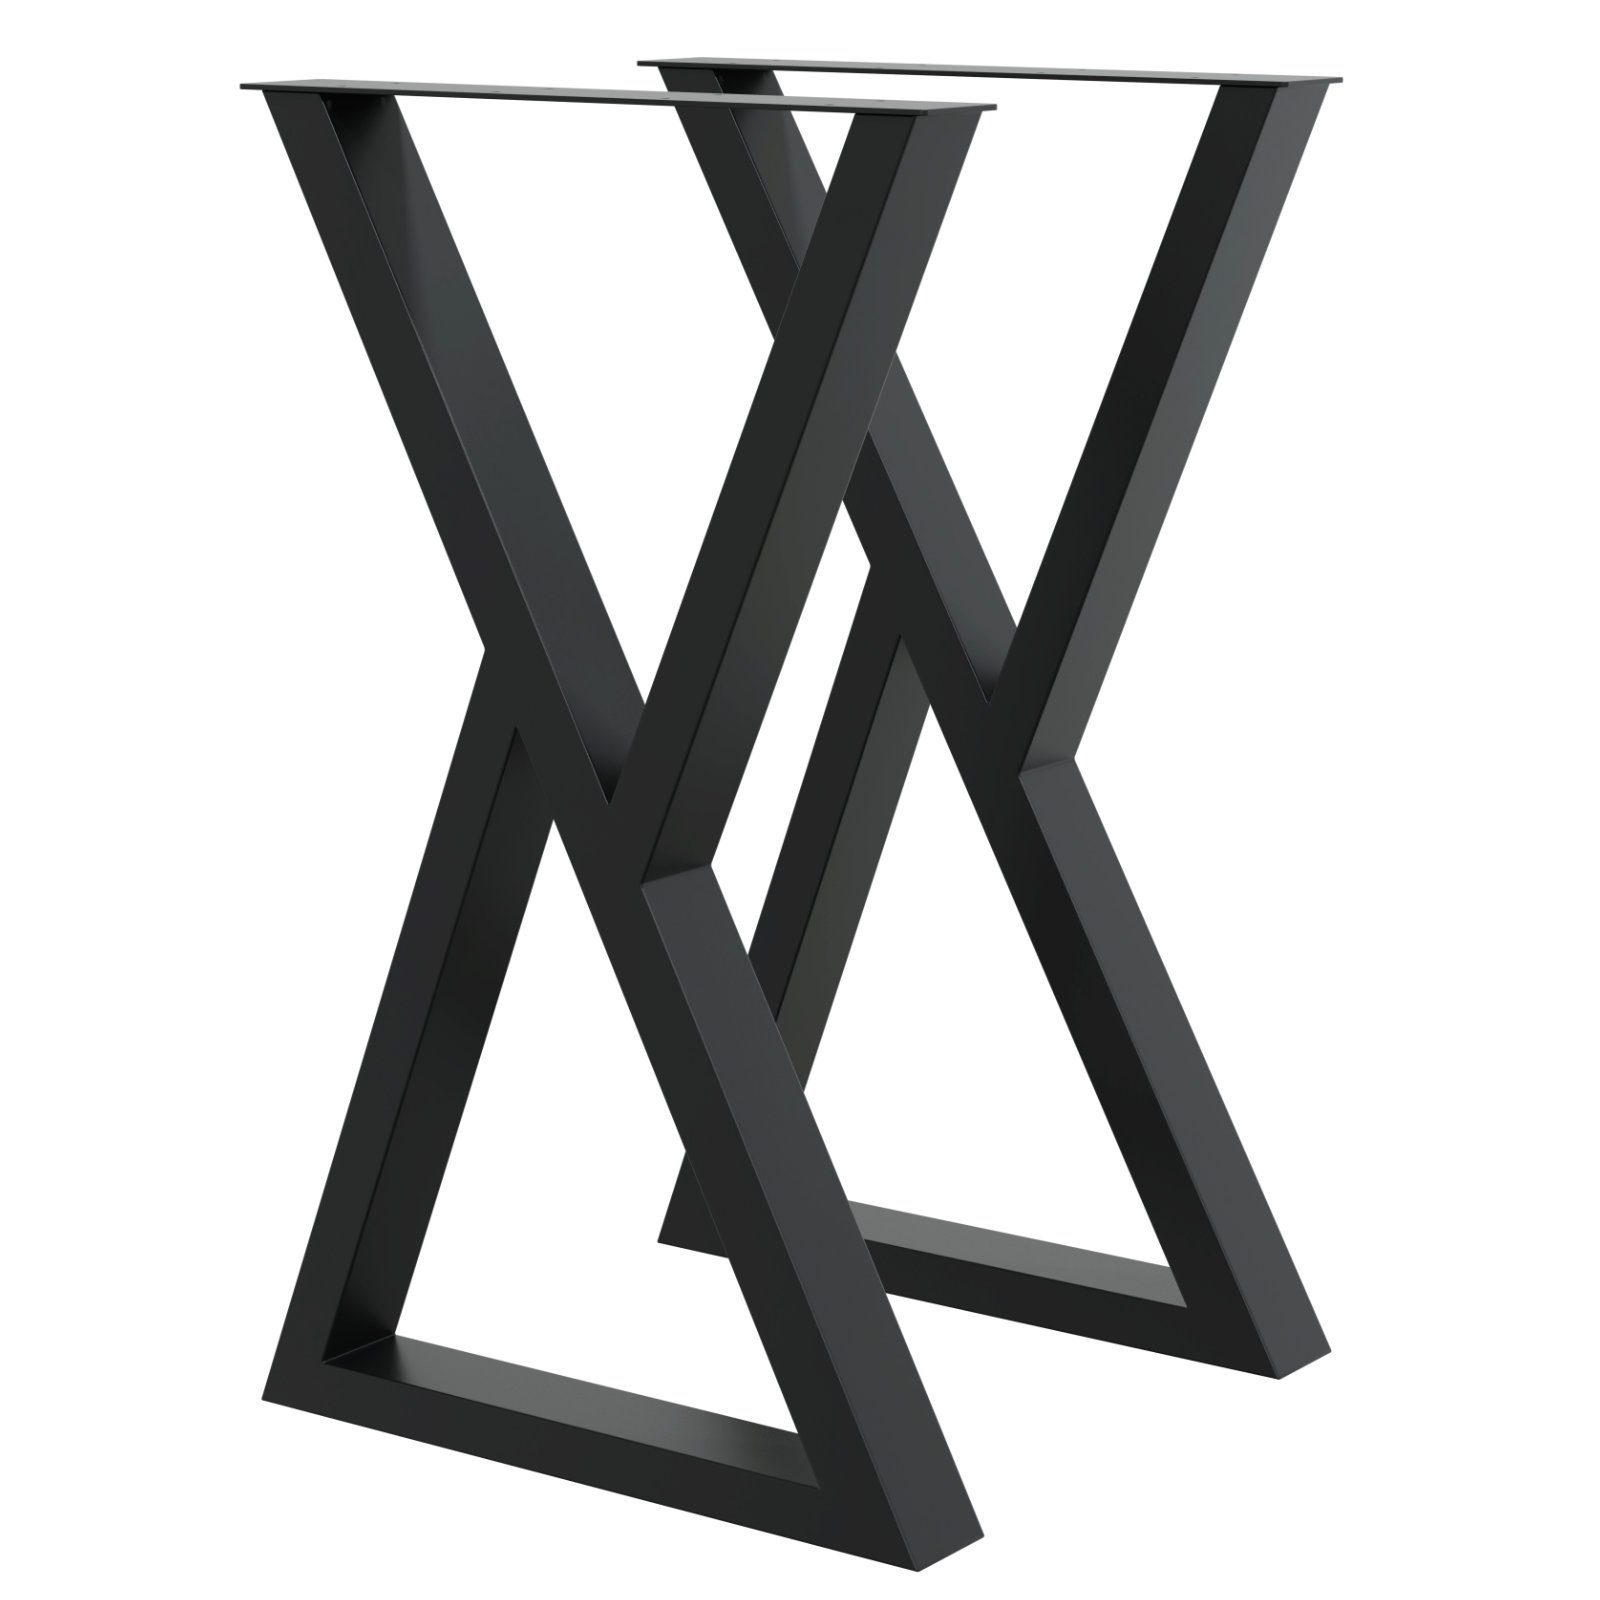 HAGO Tischbein DIY Tischkufen 45x71cm X-Form Tischgestell Esszimmertisch Beine Dreiec